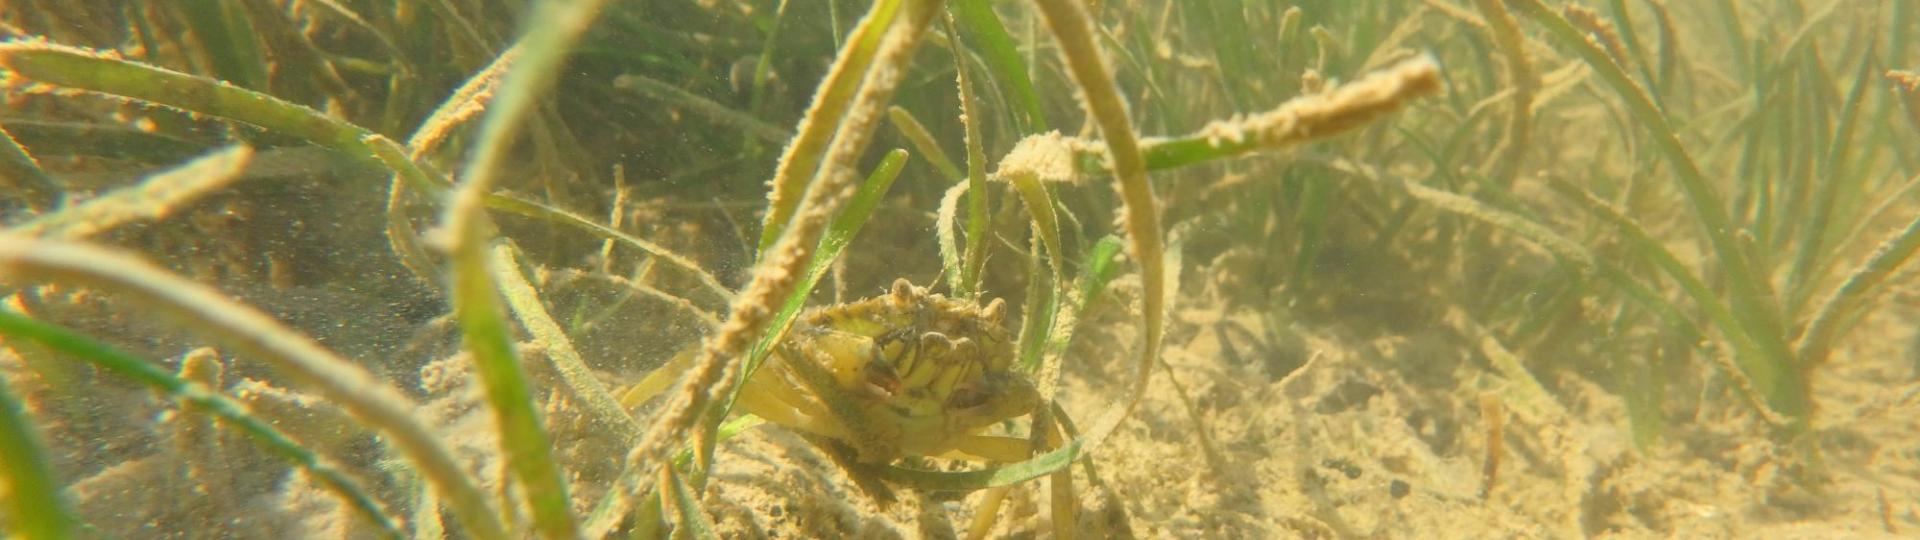 Rencontre entre un crabe vert (Carcinus maenas), une littorine et un gastéropode sur fond de zostères naines (Zostera noltei)